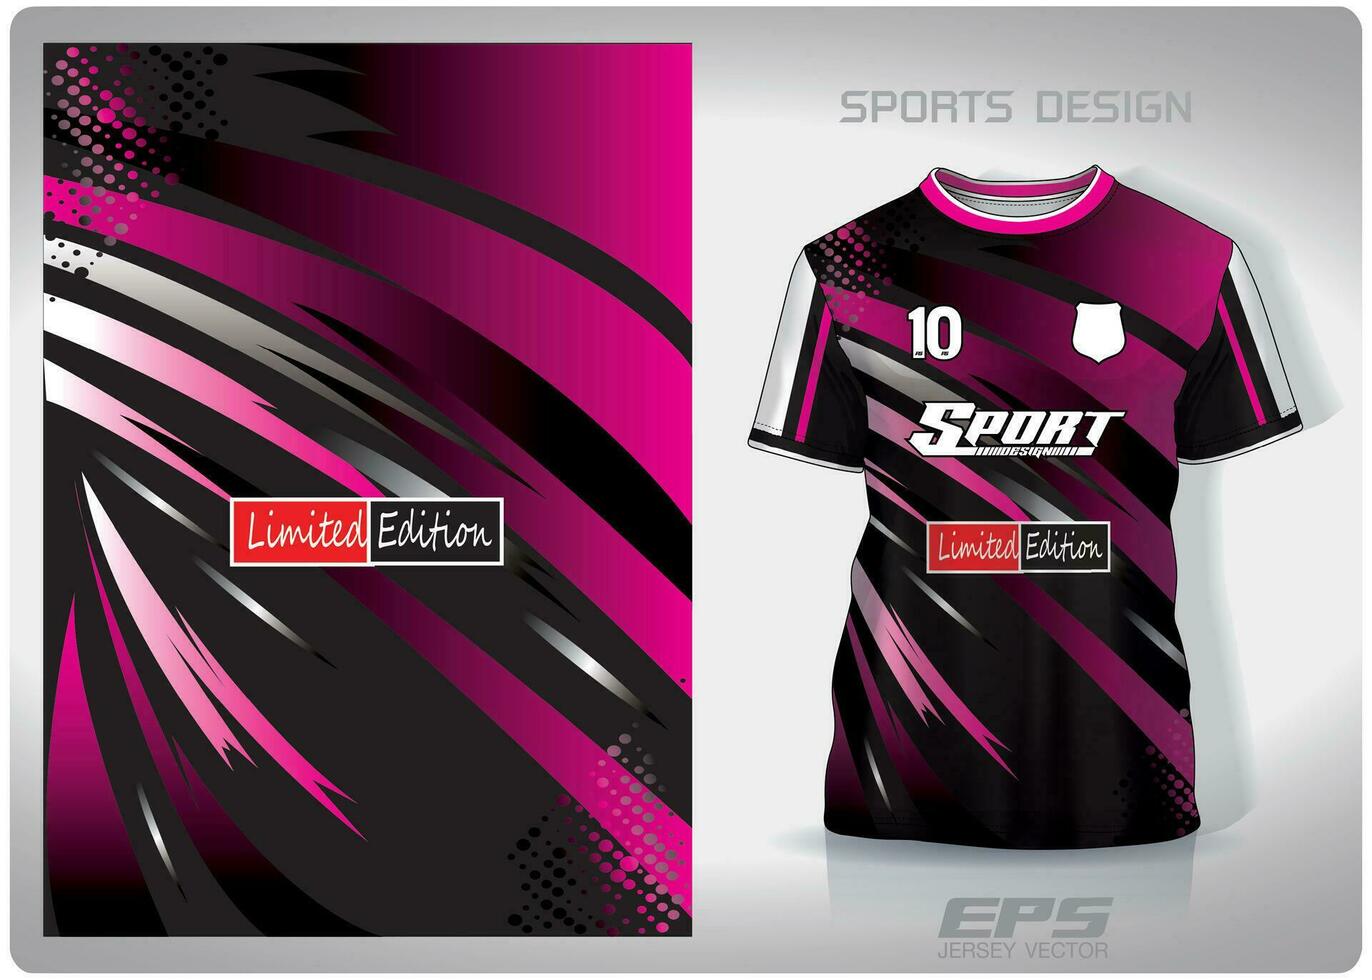 Vector sports shirt background image.black pink vortex pattern design, illustration, textile background for sports t-shirt, football jersey shirt